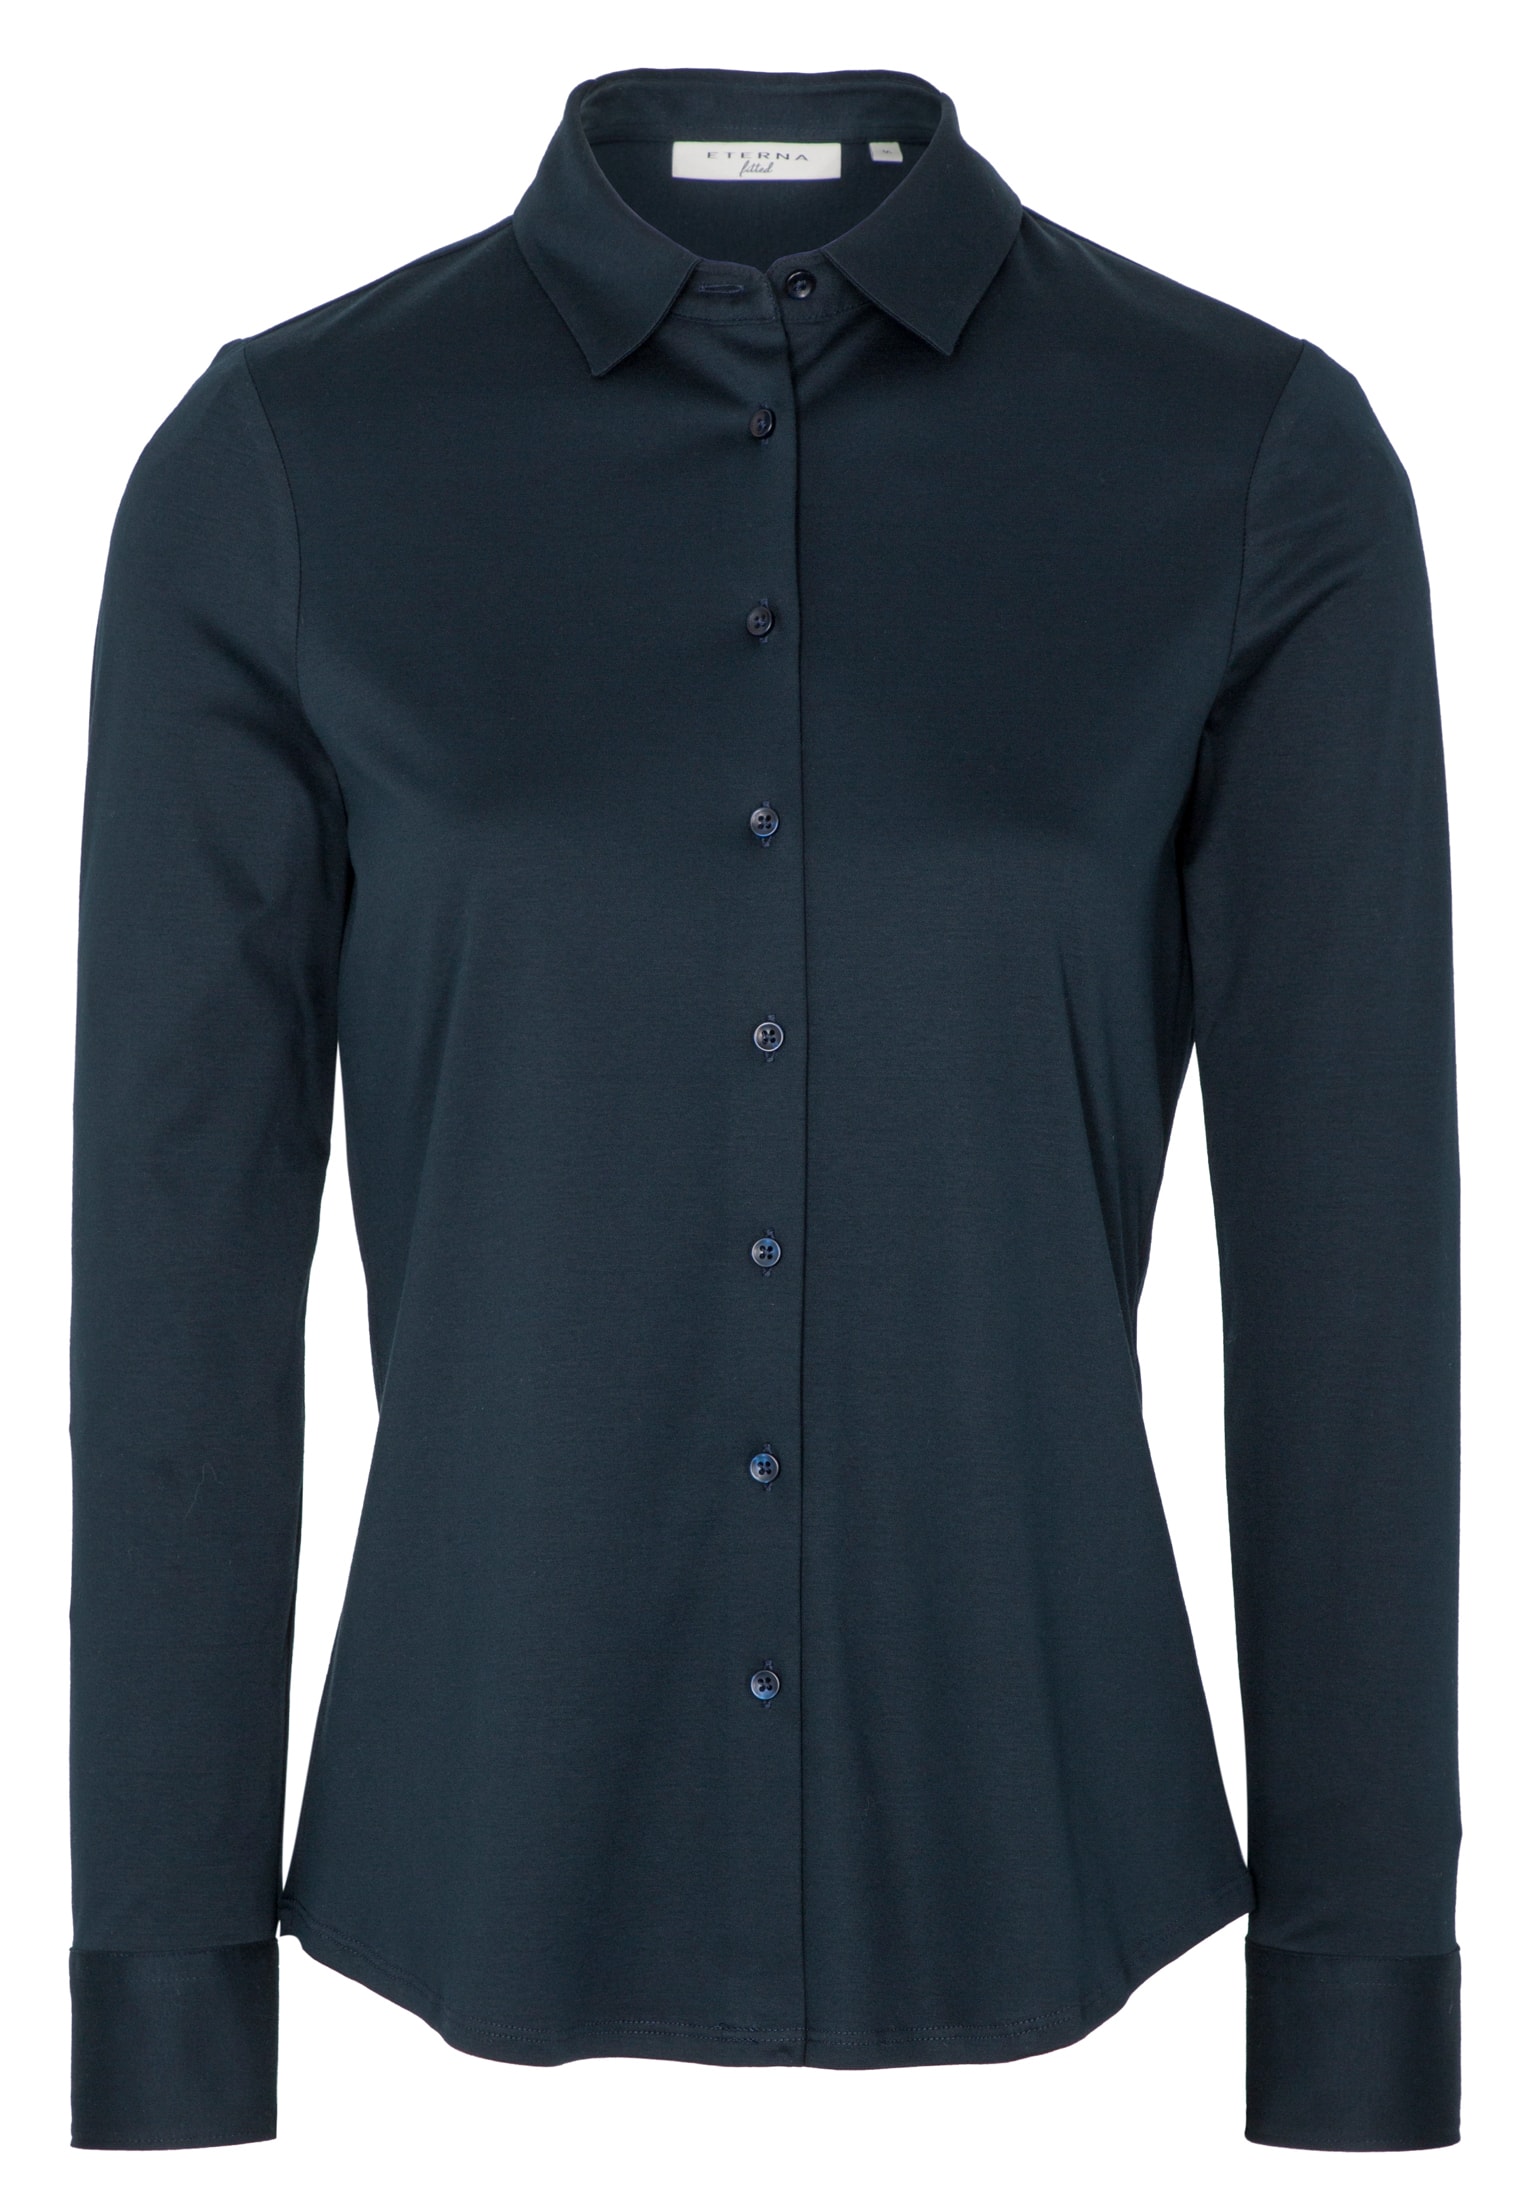 Jersey Shirt Bluse | 44 | in Langarm navy | | navy unifarben 2BL00229-01-91-44-1/1